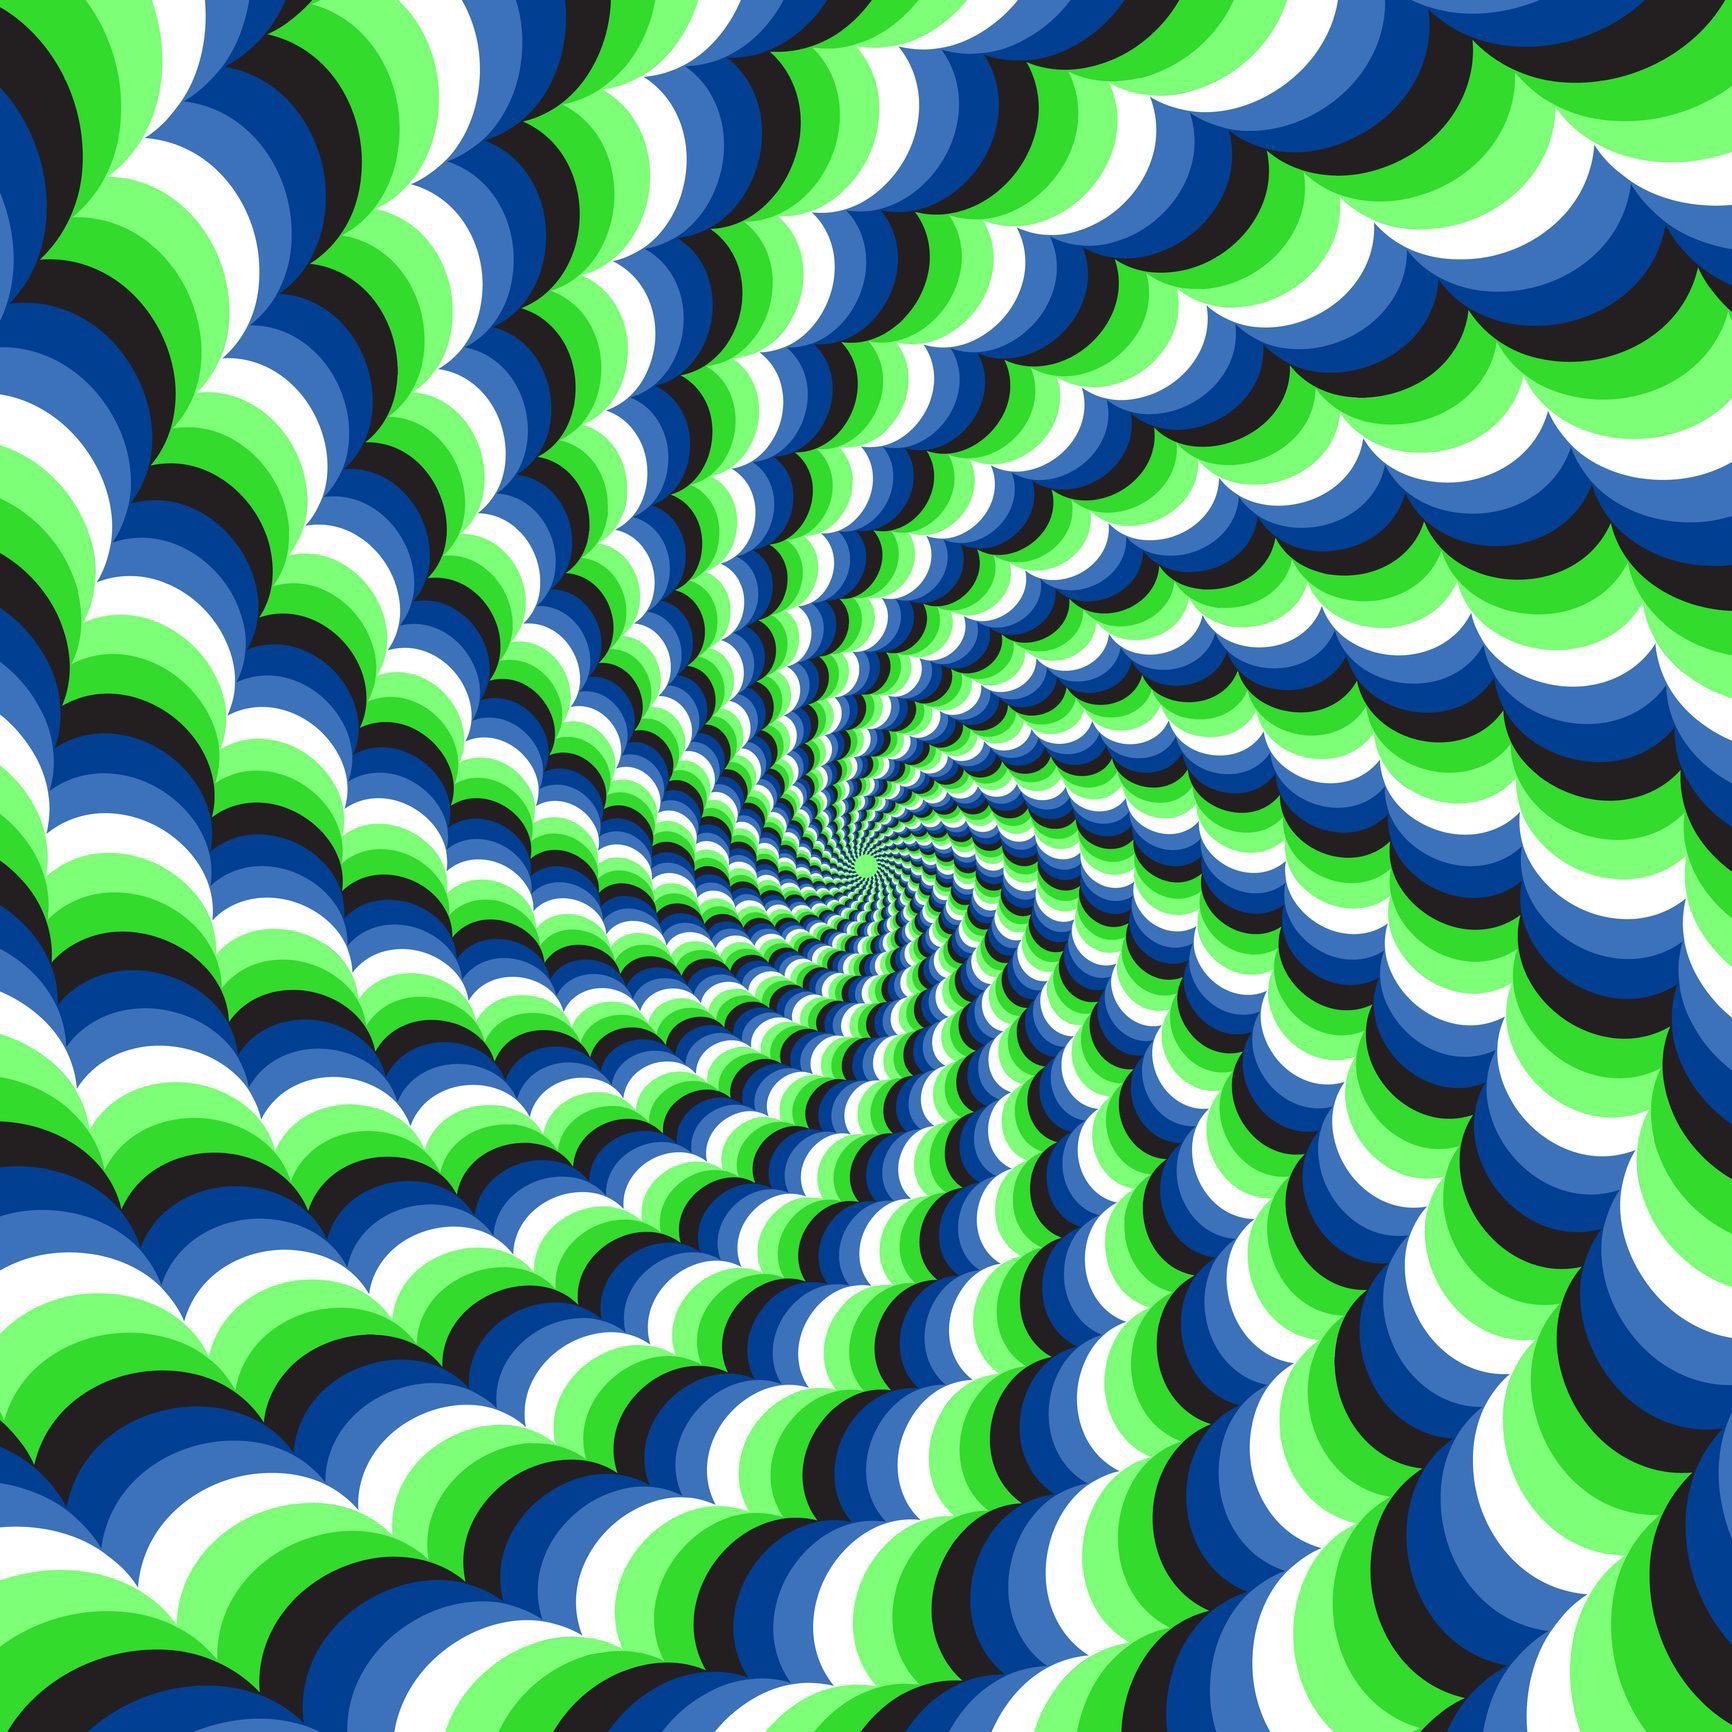 Illusions D optique à Imprimer 24 illusions d'optique complètement étourdissantes